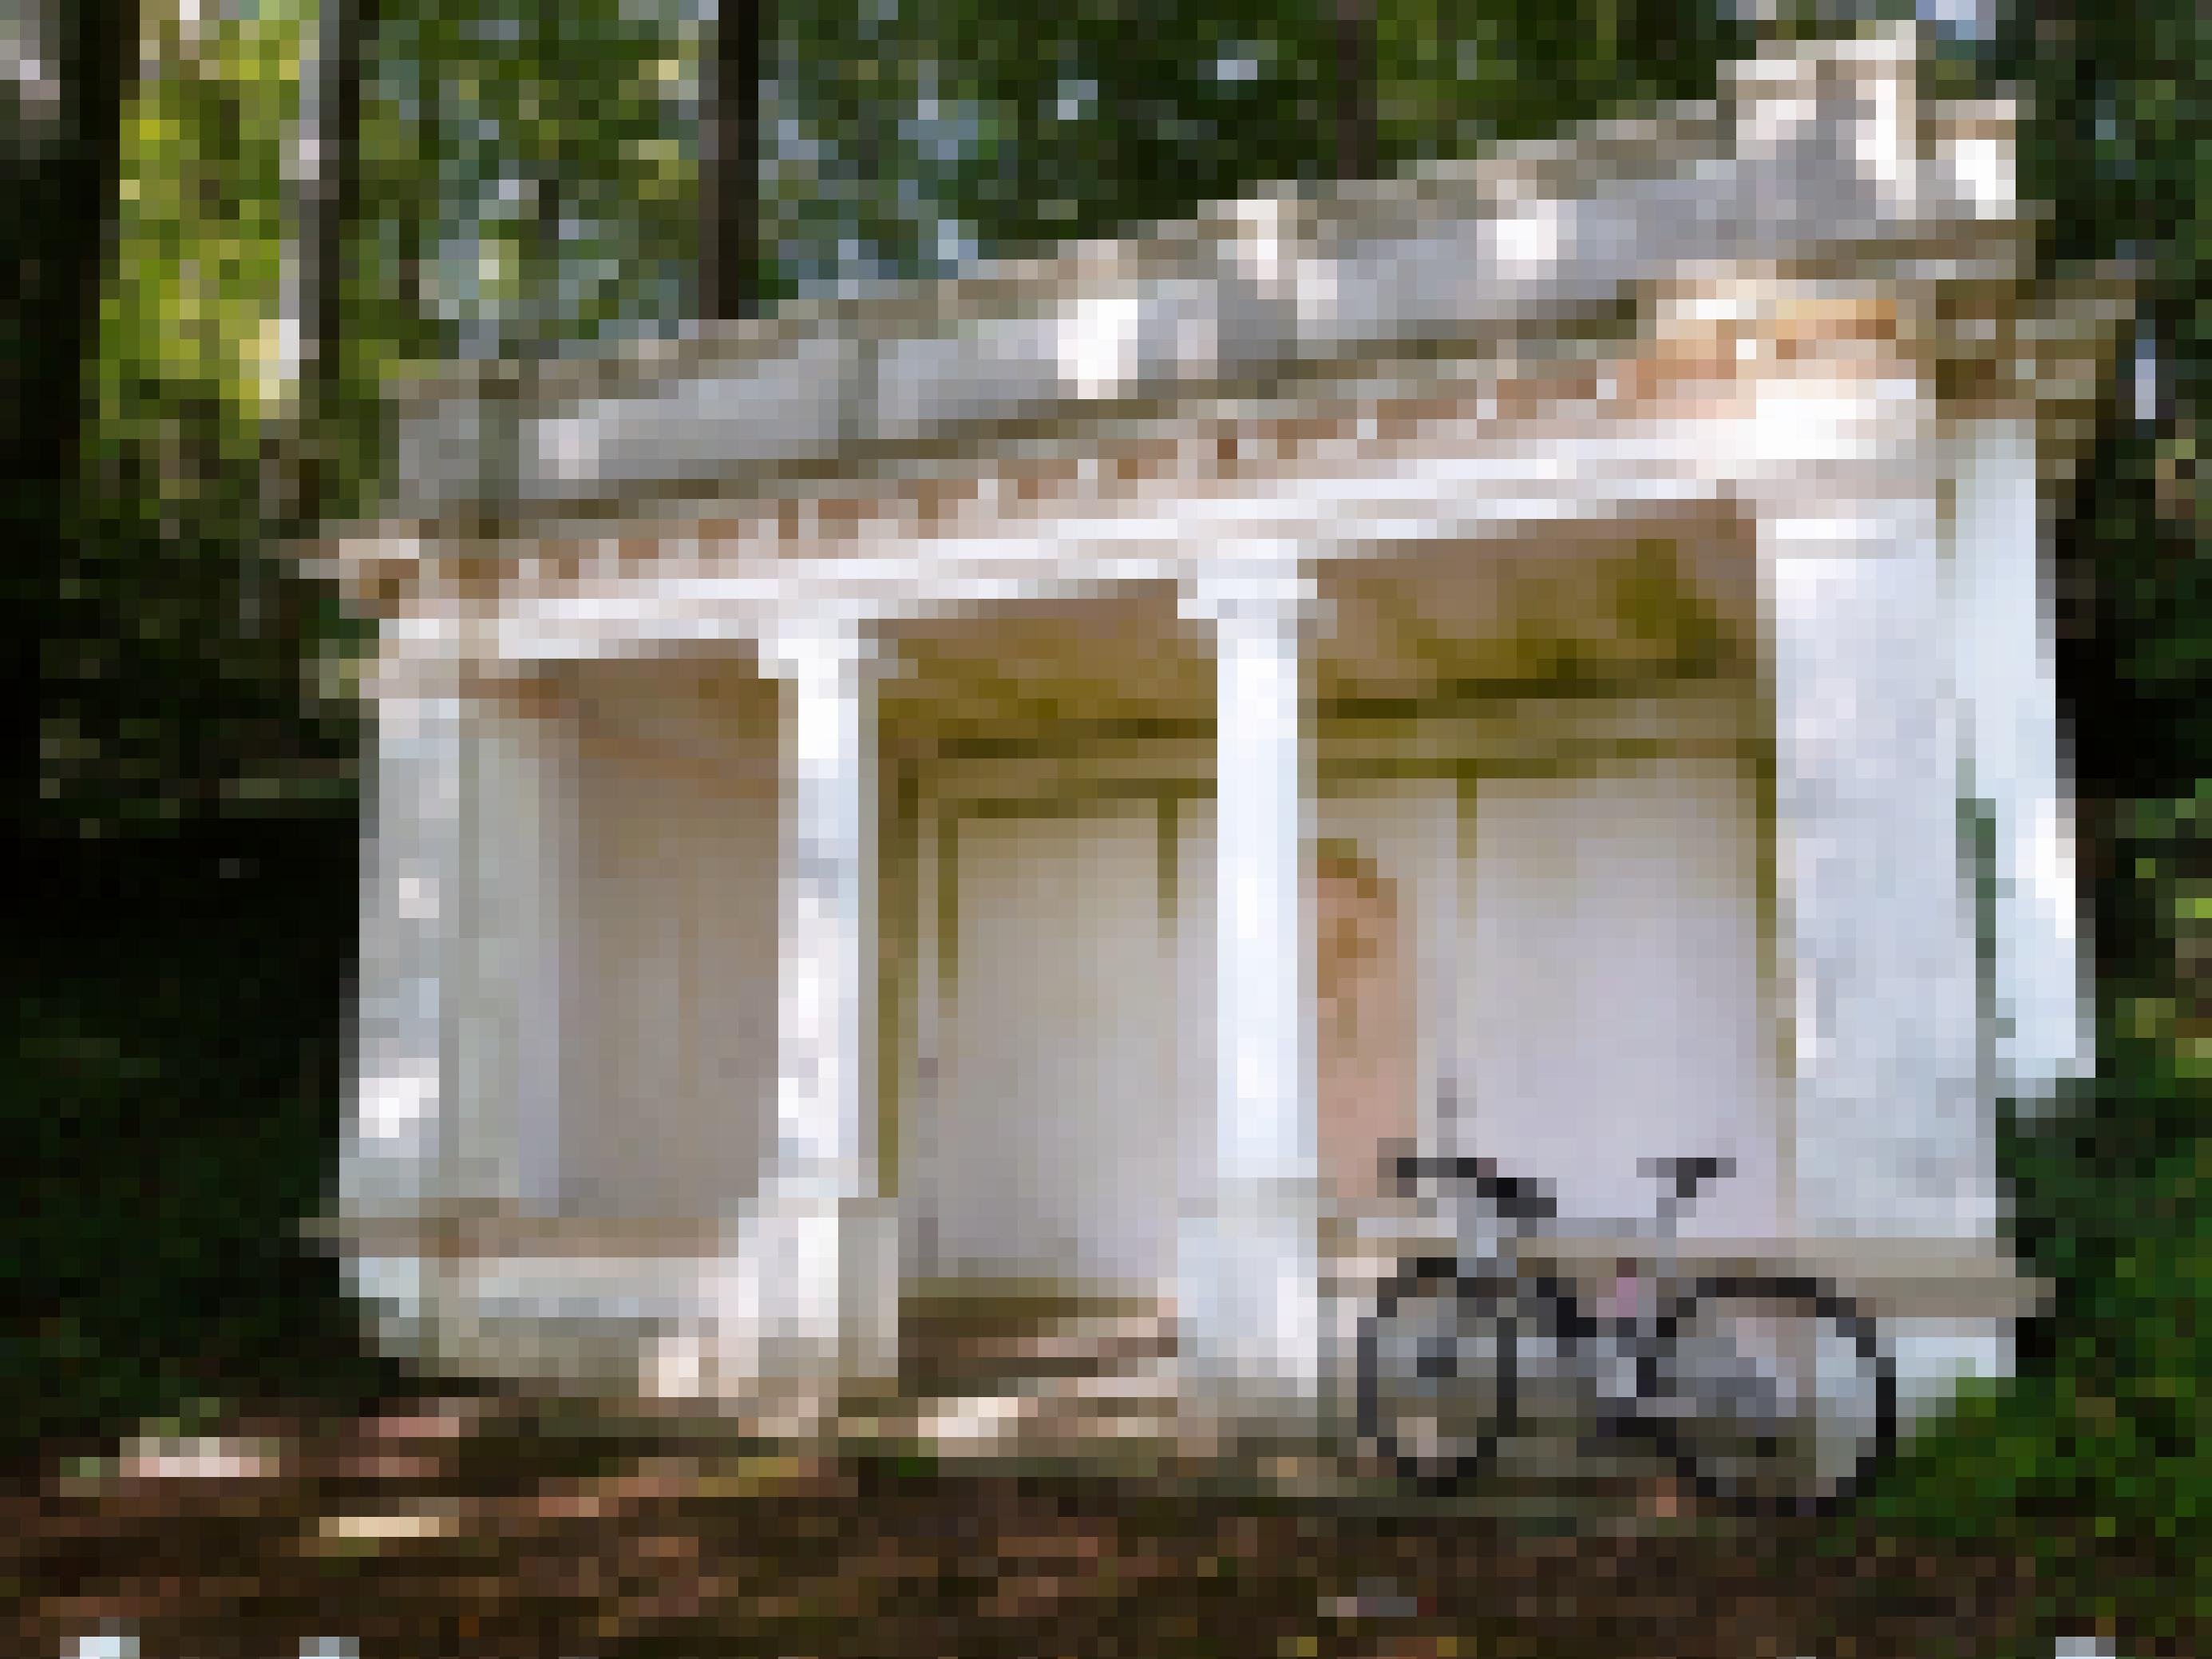 Mitten im Wald steht ein Gründerzeit-Säulenpavillon im Stile des Historismus.